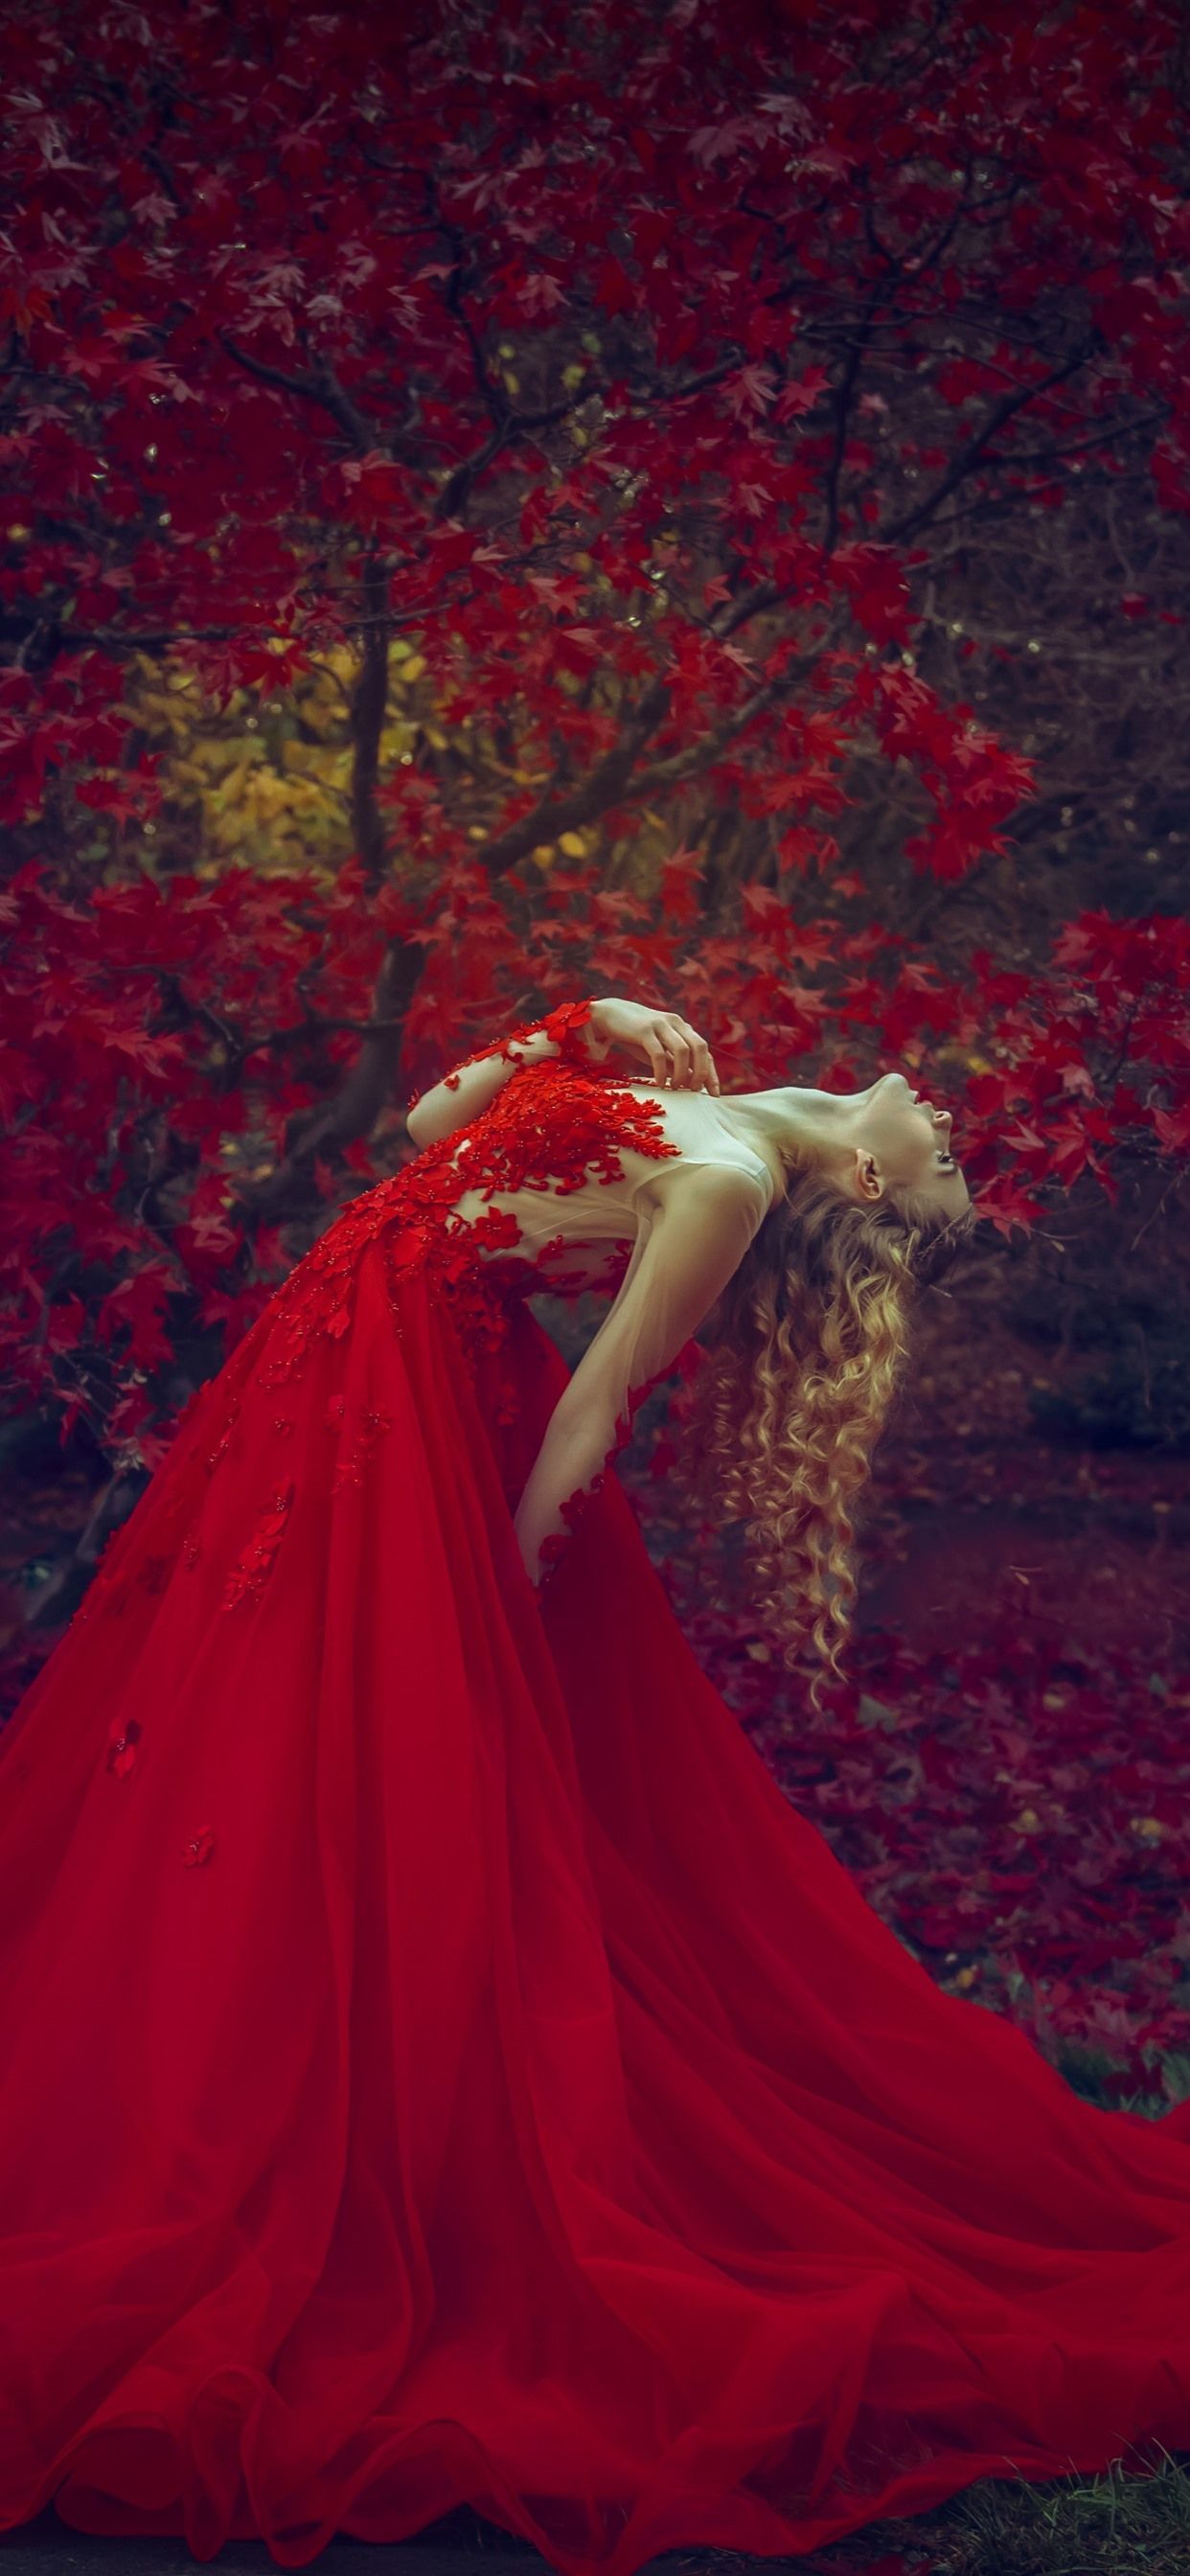 Rote Hintergrundbild 1242x2688. Rotes Rock blondes Mädchen, Pose, rote Ahornblätter, Herbst 5120x2880 UHD 5K Hintergrundbilder, HD, Bild